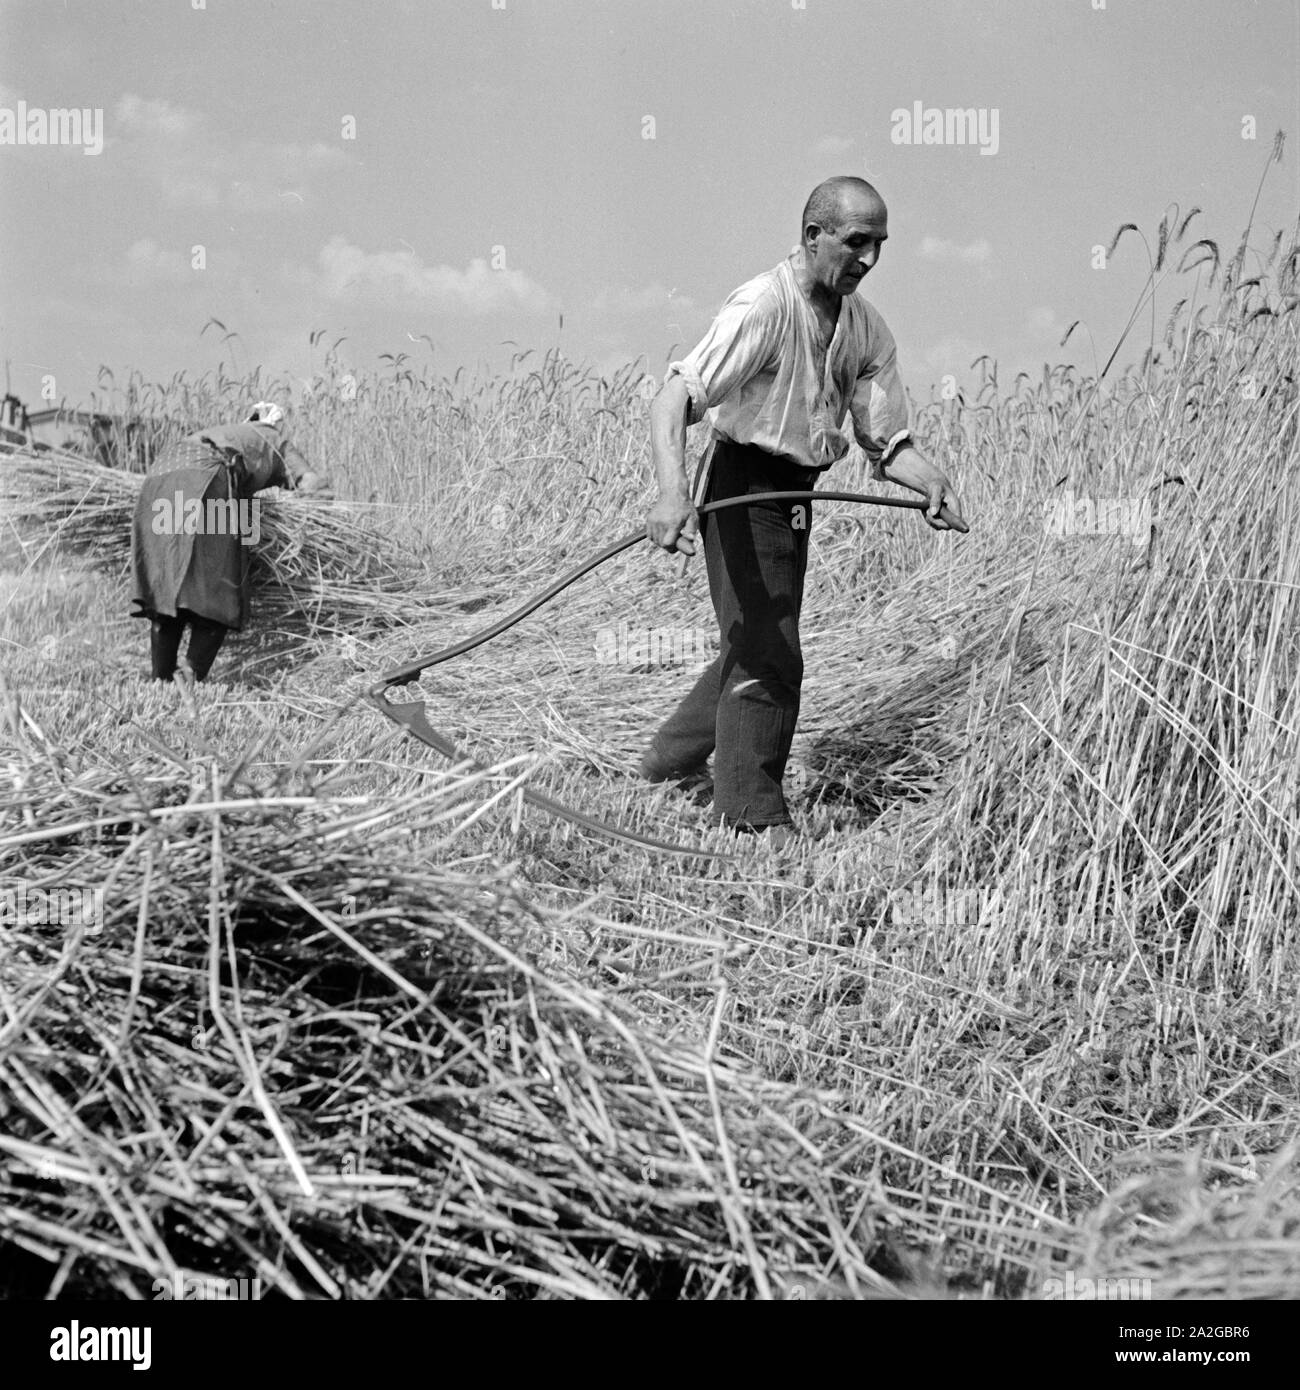 Bauernfamilie bei der Getreideernte, Deutschland 1930er Jahre. Farmer family harvesting grain, Germany 1930s. Stock Photo